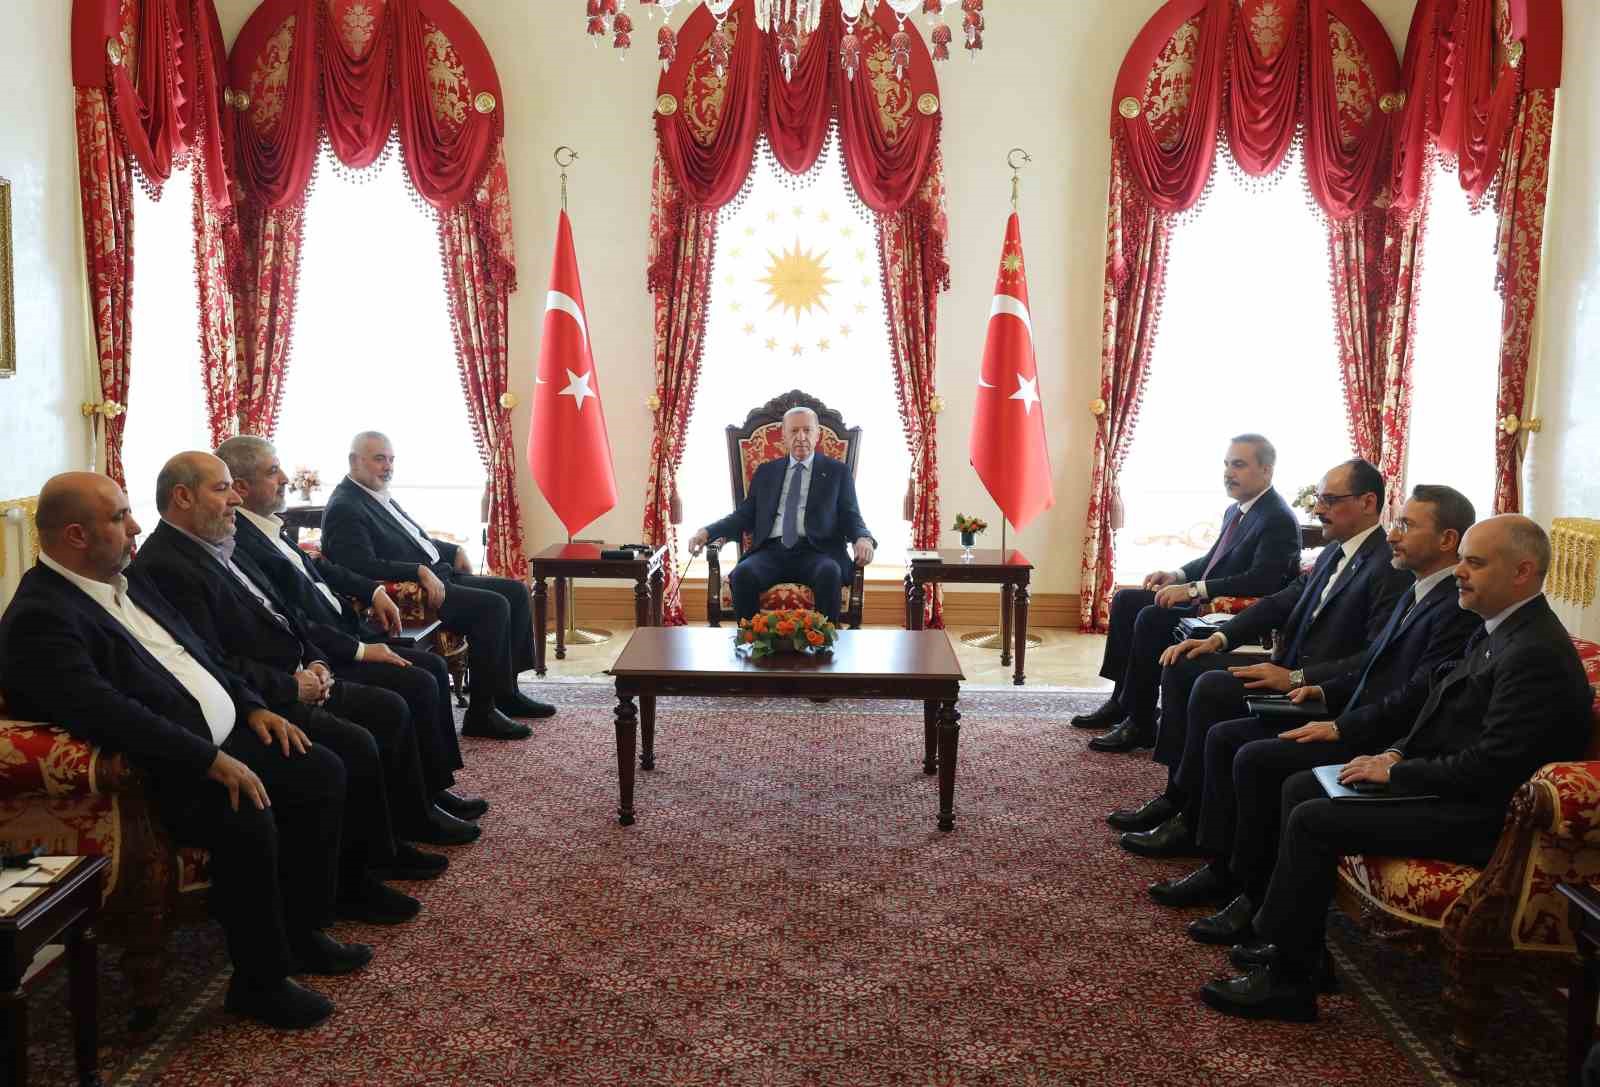 cumhurbaskani erdogan dolmabahcede hamas siyasi buro baskani haniyeyi kabul etti 4 fkH9ITVW